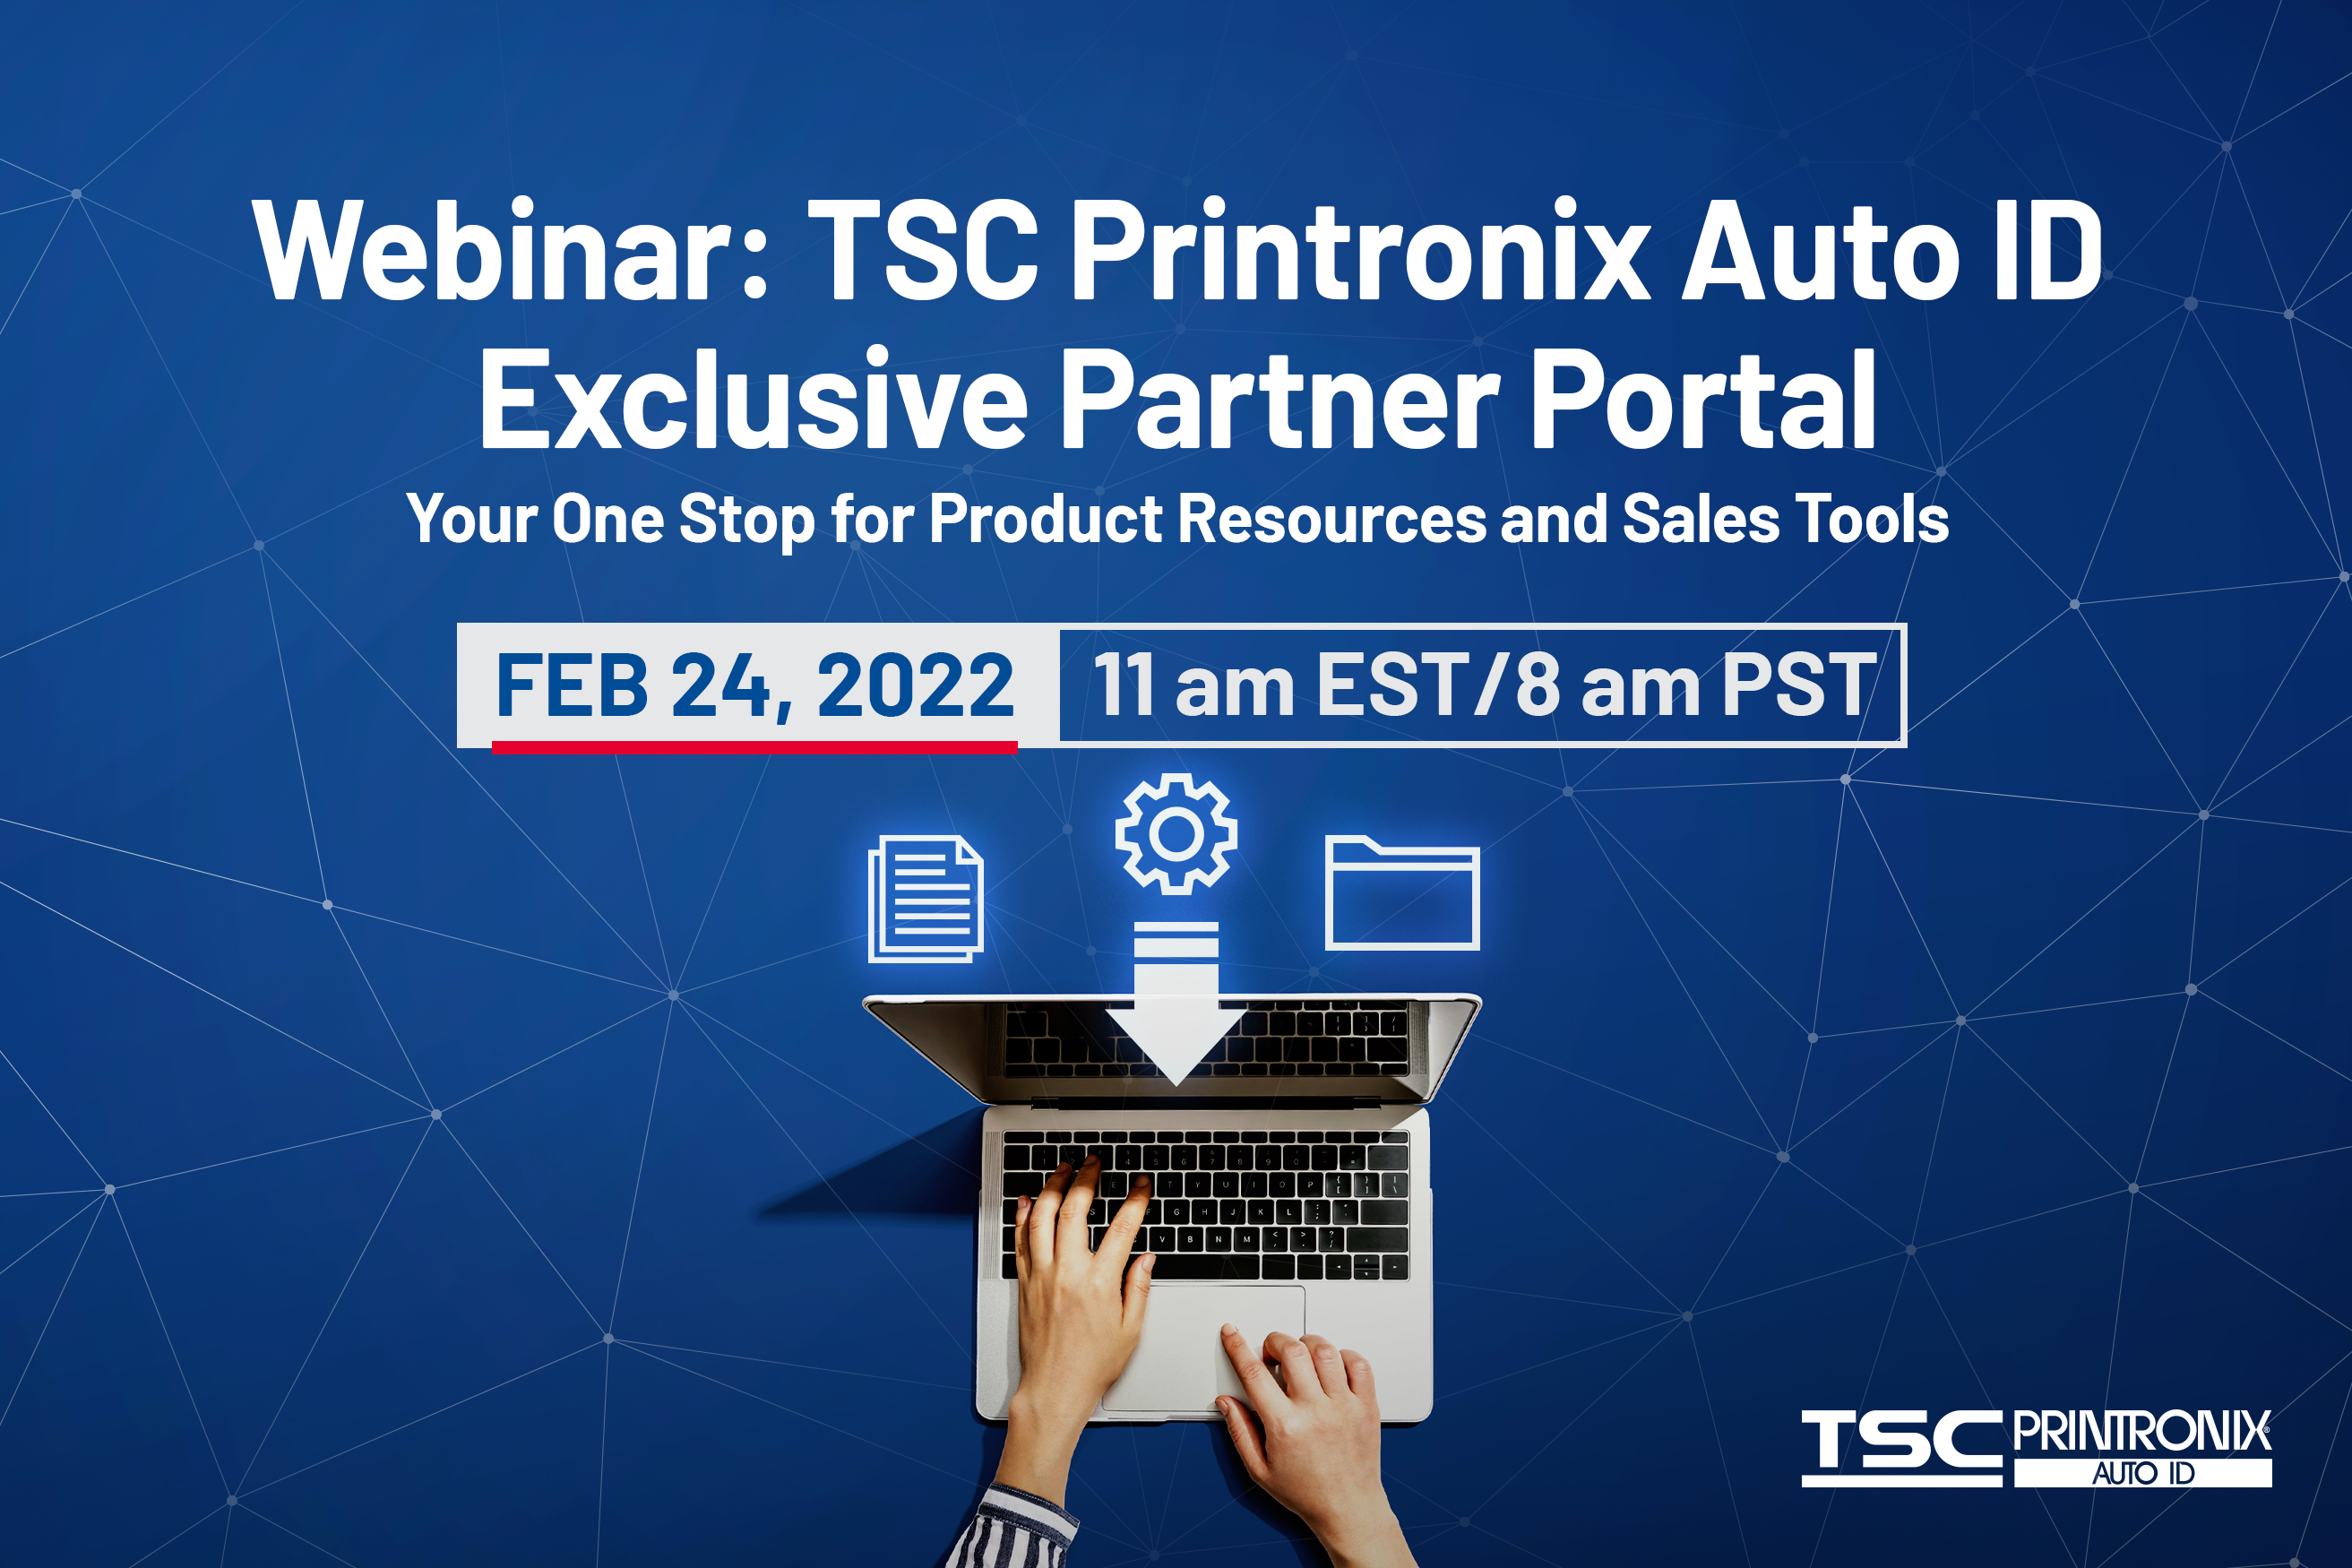 Portal exclusivo para socios de TSC Printronix Auto ID